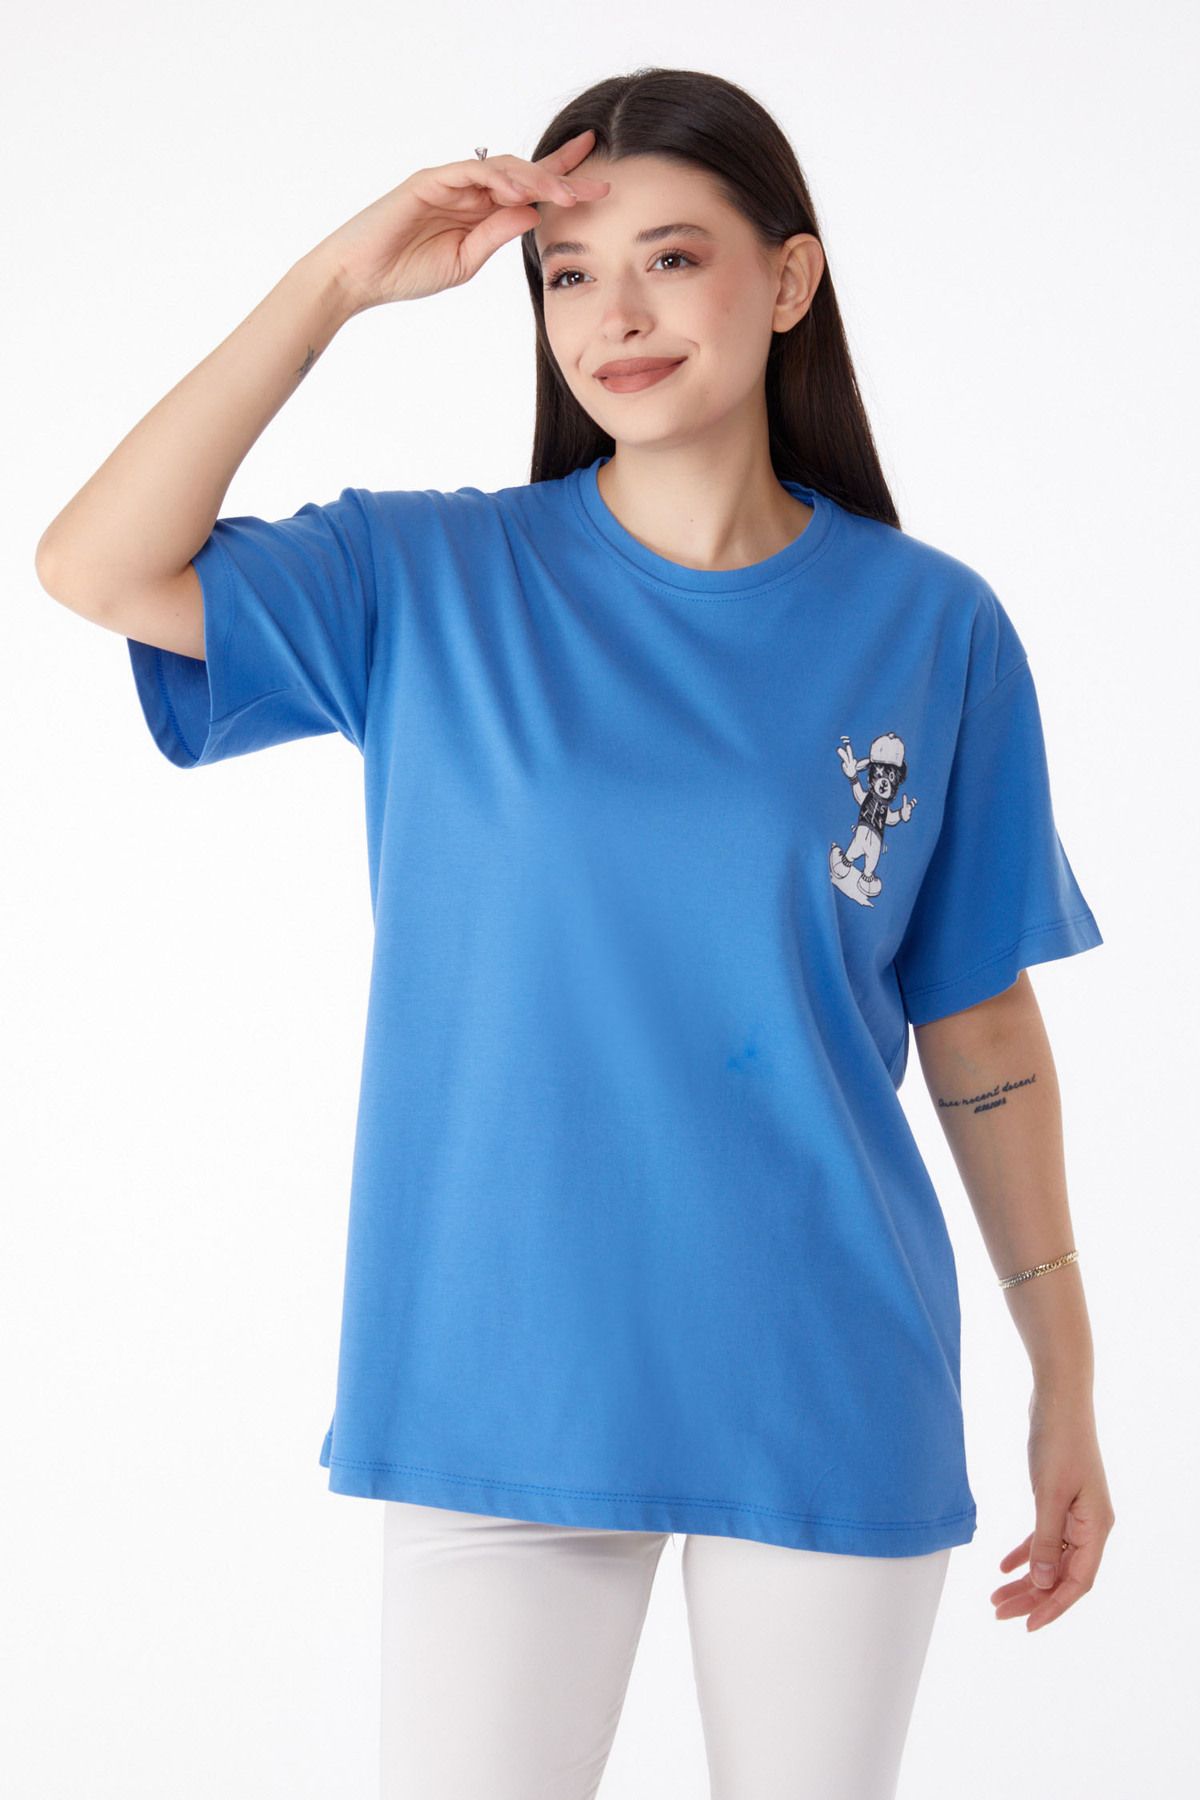 TOFİSA Düz Bisiklet Yaka Kadın Mavi Baskılı T-shirt - 25287